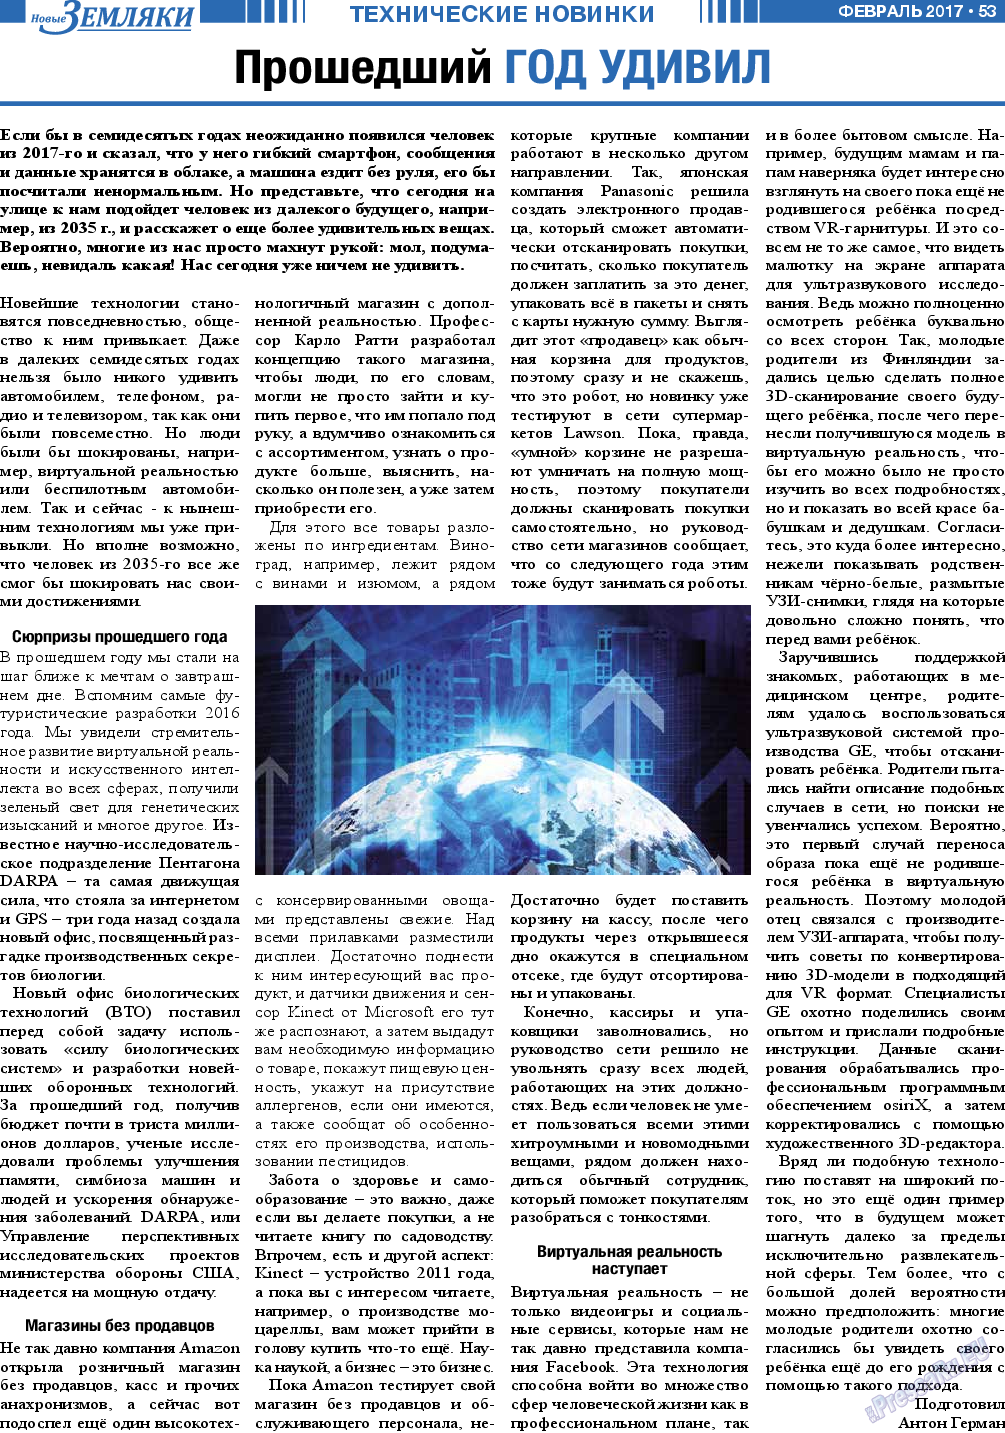 Новые Земляки, газета. 2017 №2 стр.53